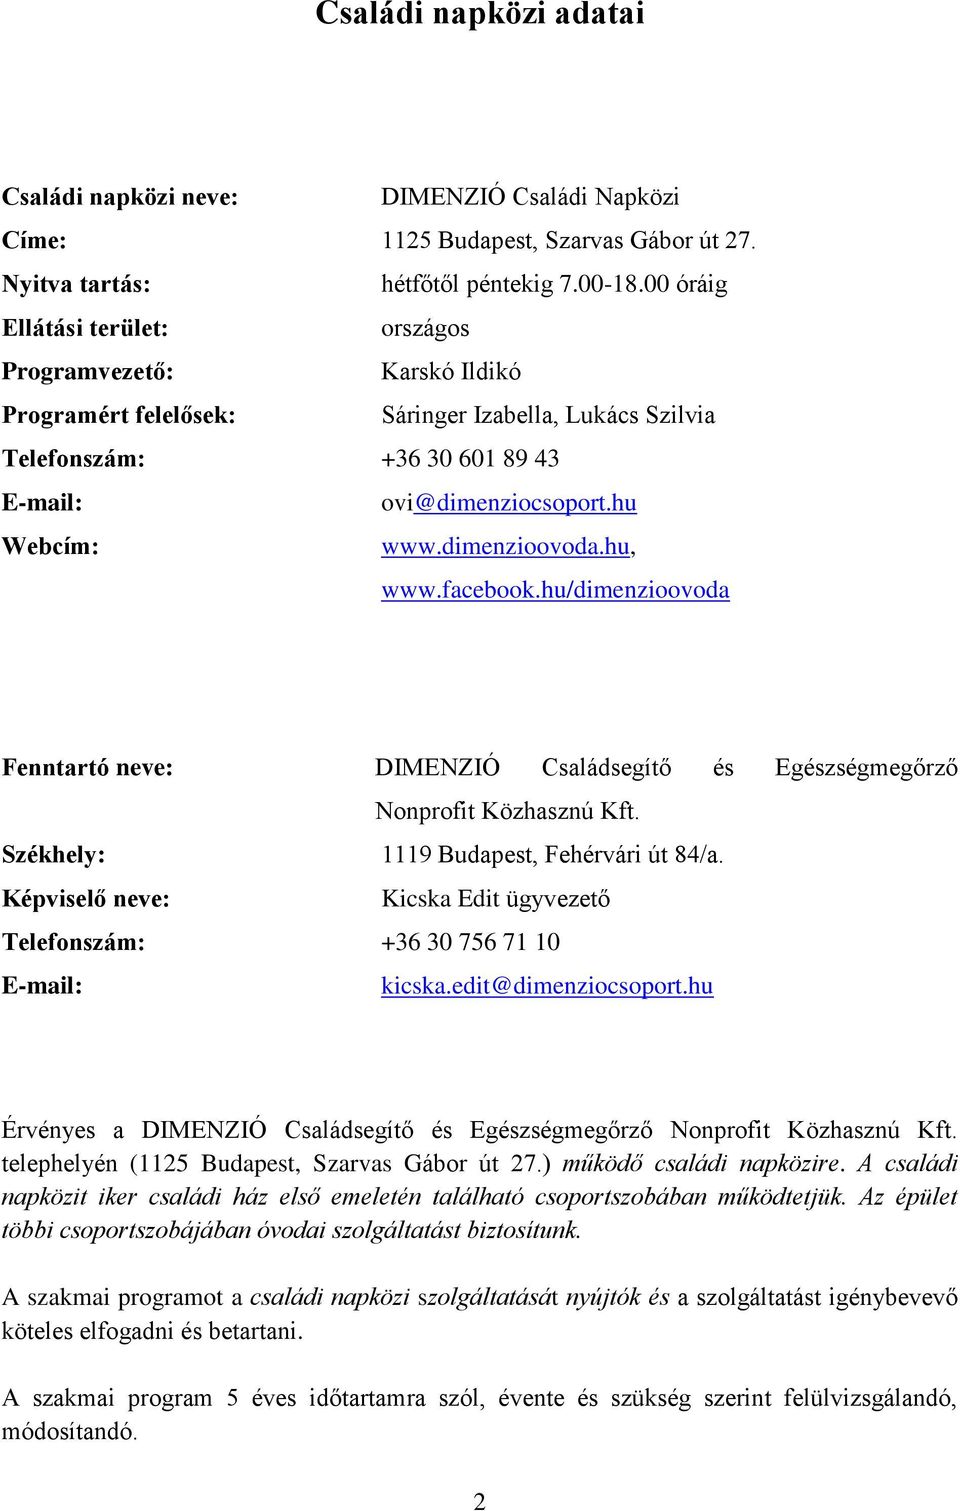 dimenzioovoda.hu, www.facebook.hu/dimenzioovoda Fenntartó neve: DIMENZIÓ Családsegítő és Egészségmegőrző Nonprofit Közhasznú Kft. Székhely: 1119 Budapest, Fehérvári út 84/a.